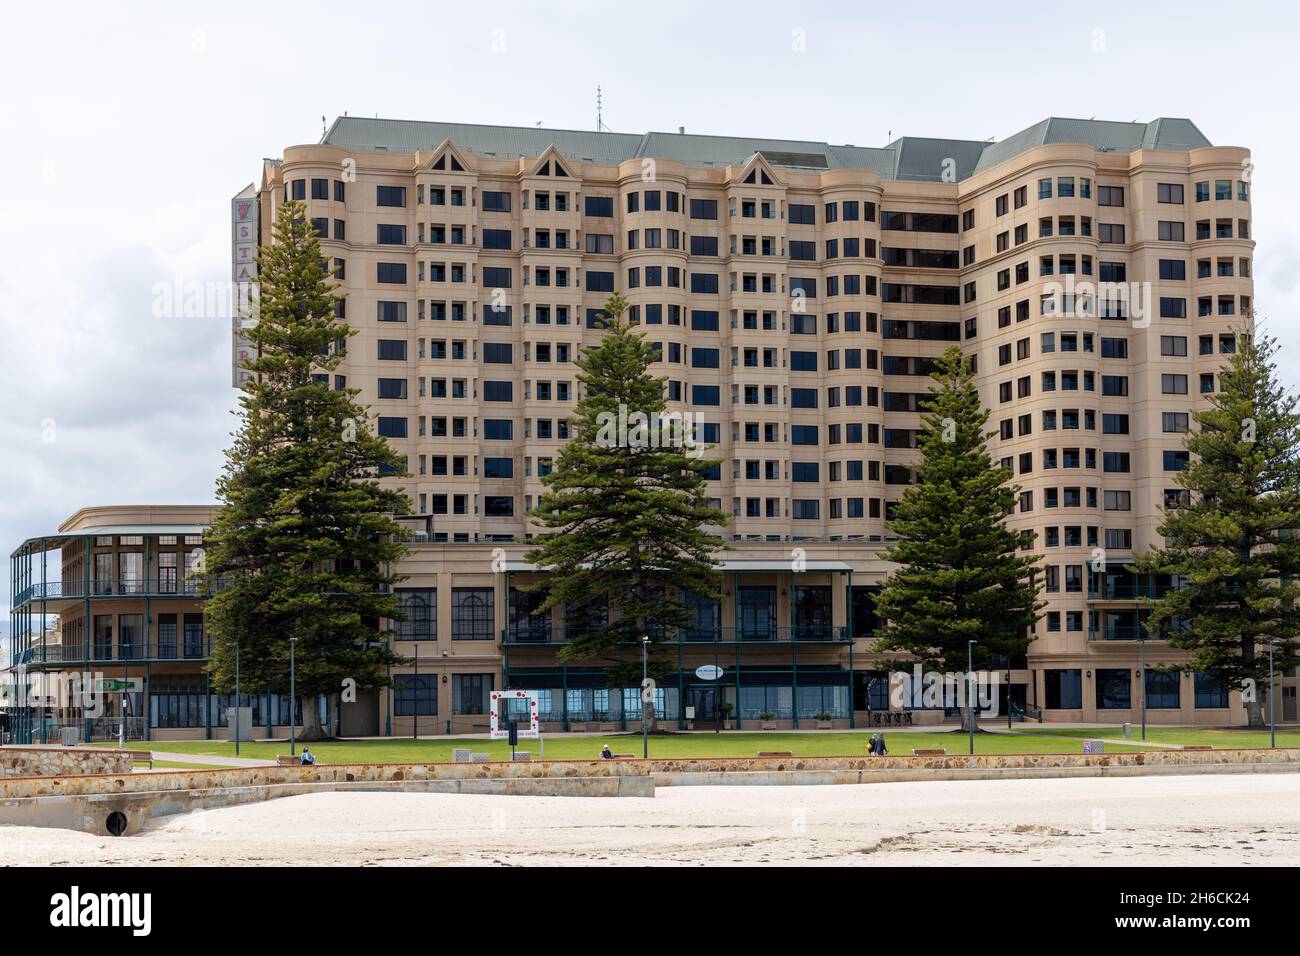 L'hôtel Stamford Grand par une journée ensoleillée en Australie méridionale le 15 novembre 2021 Banque D'Images